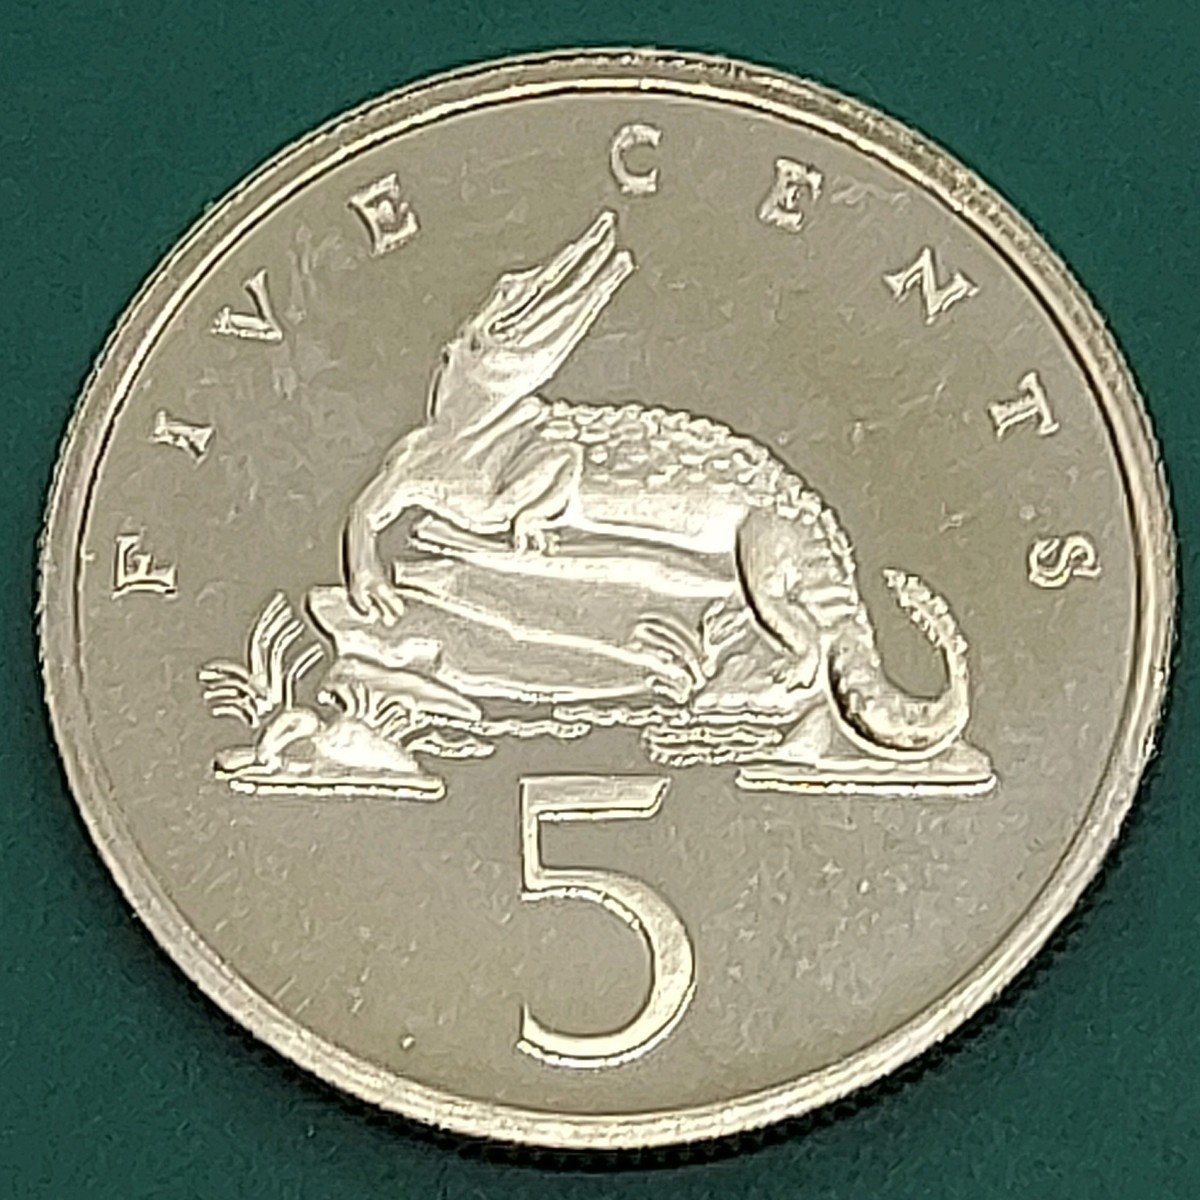 [60211] не использовался товар ja mica 5 цент (1976 год ) 5 цент (1977 год ) 1 цент (1976 год ). суммировать 3 пункт мир монета монета коллекция товар 